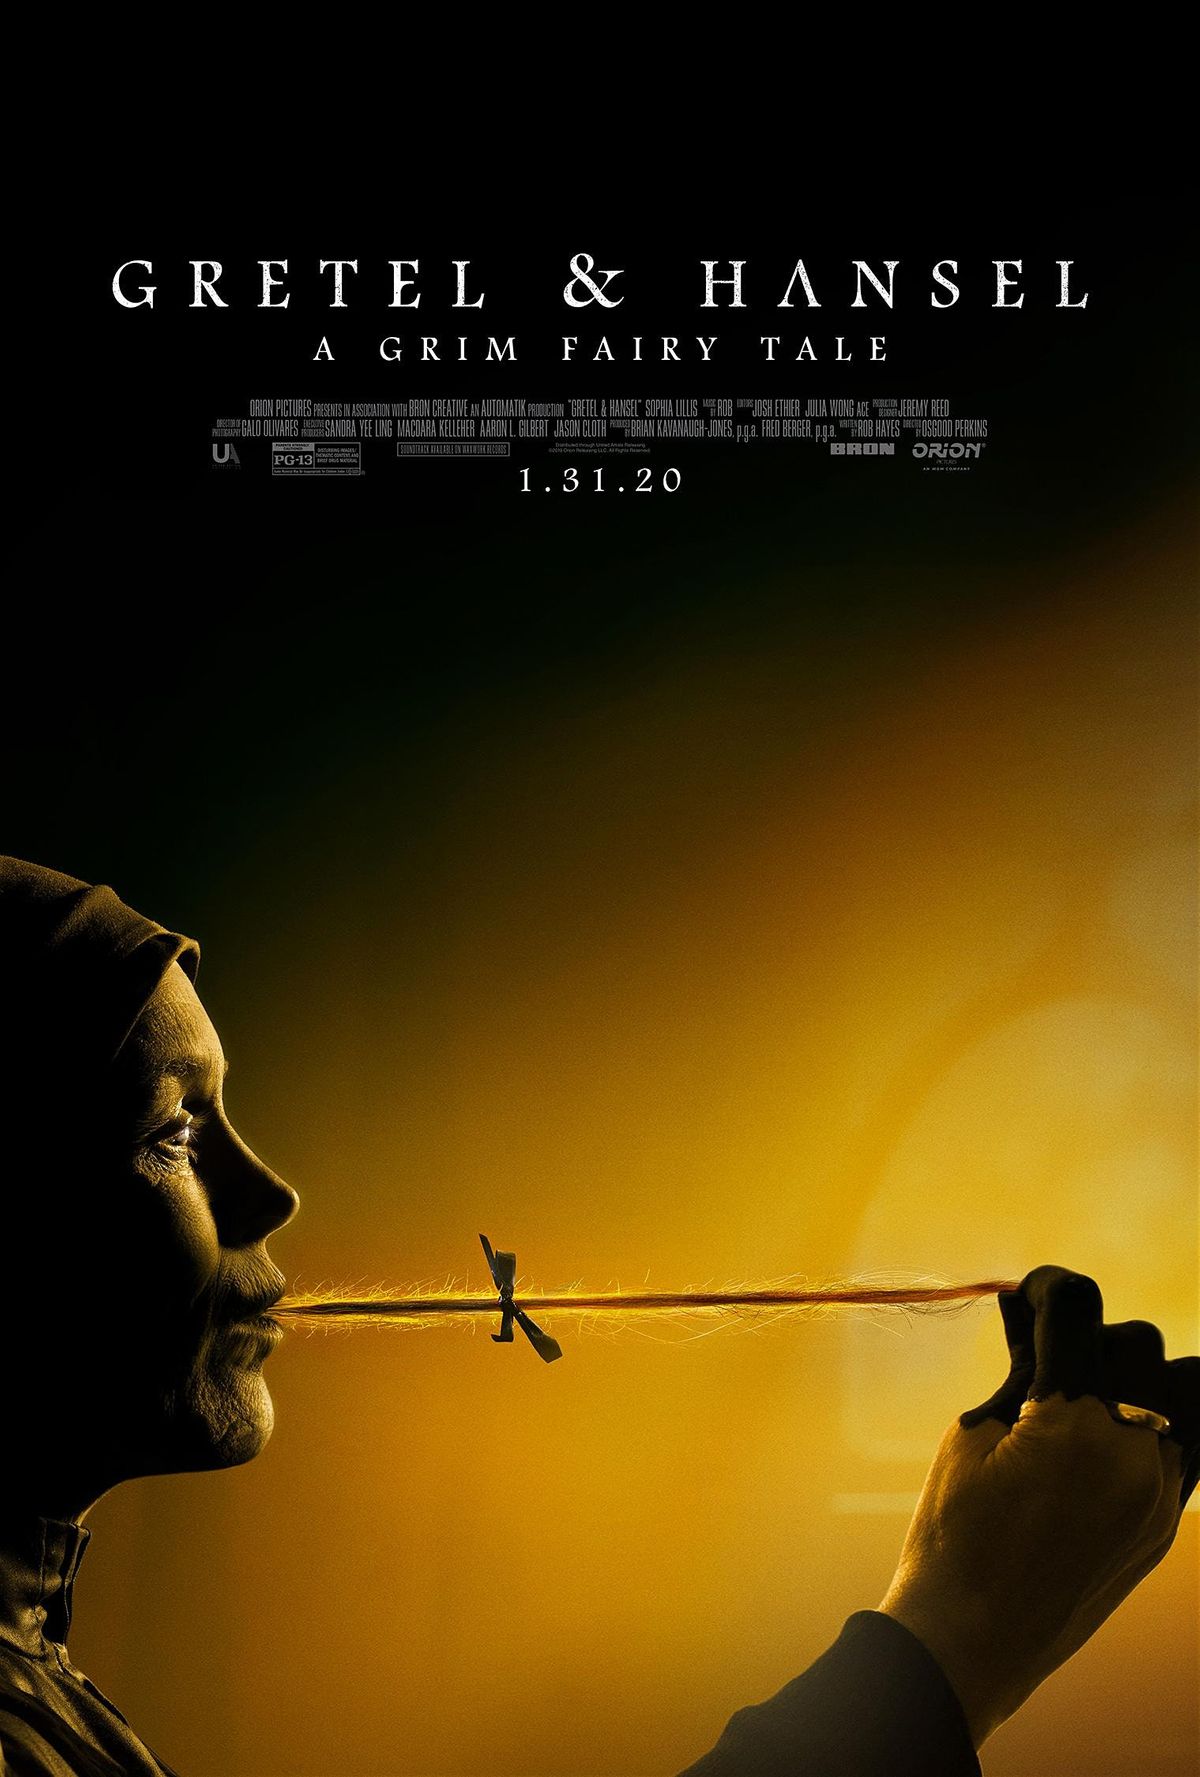 Gretel & Hansel (2020) Official Full Movie Free Online